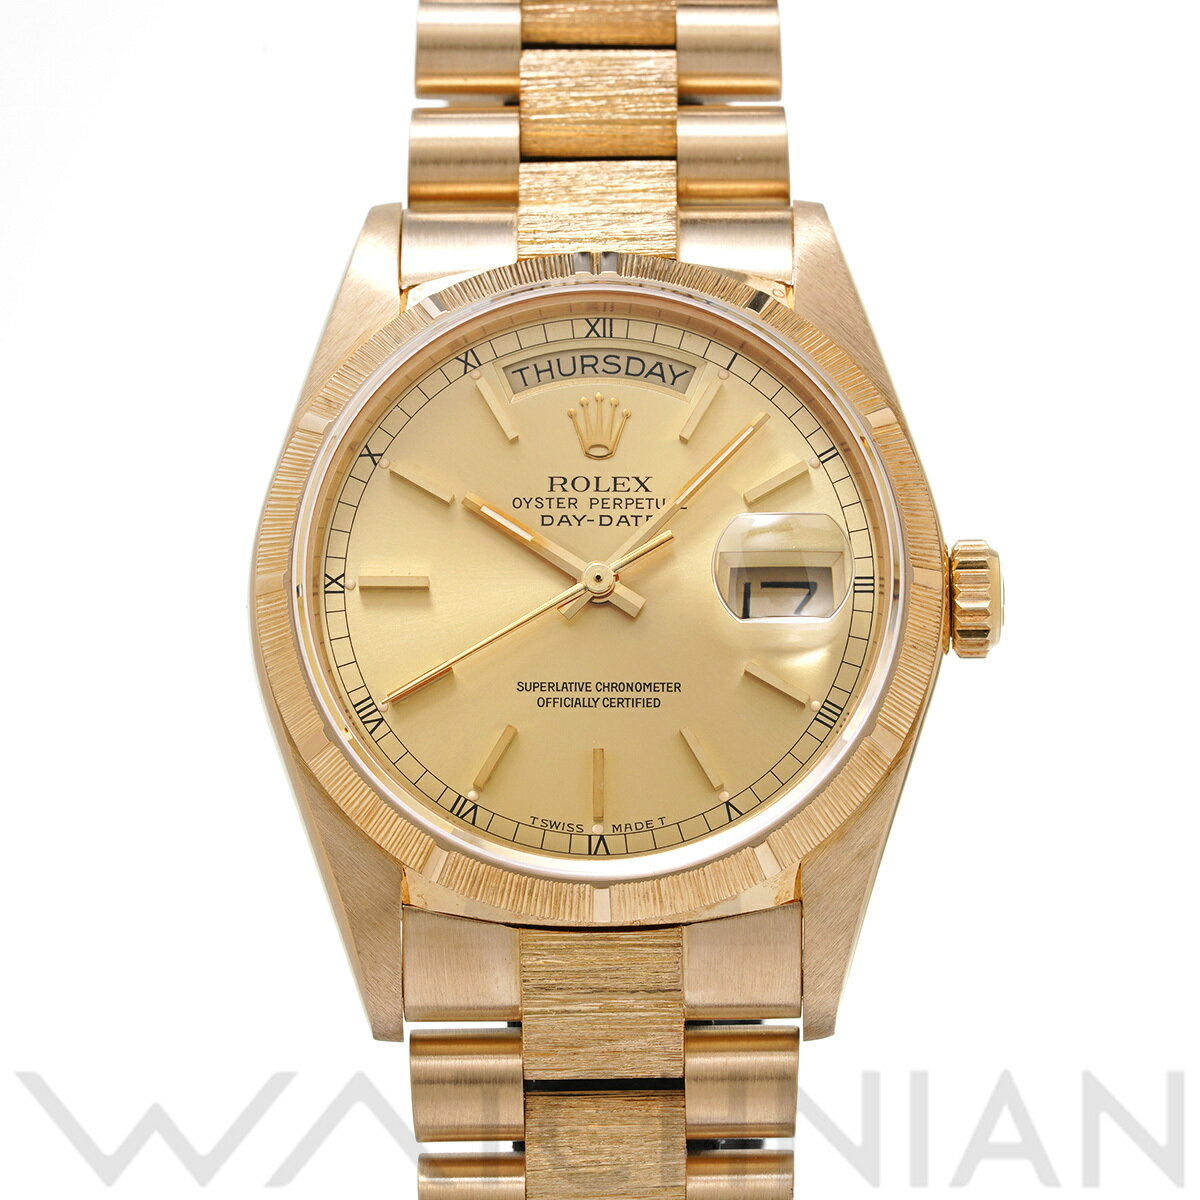 【5種選べるクーポン】【ローン60回払い無金利】【中古】 ロレックス ROLEX デイデイト バーク 18078 1986年頃製造 シャンパン メンズ 腕時計 ロレックス 時計 高級腕時計 ブランド